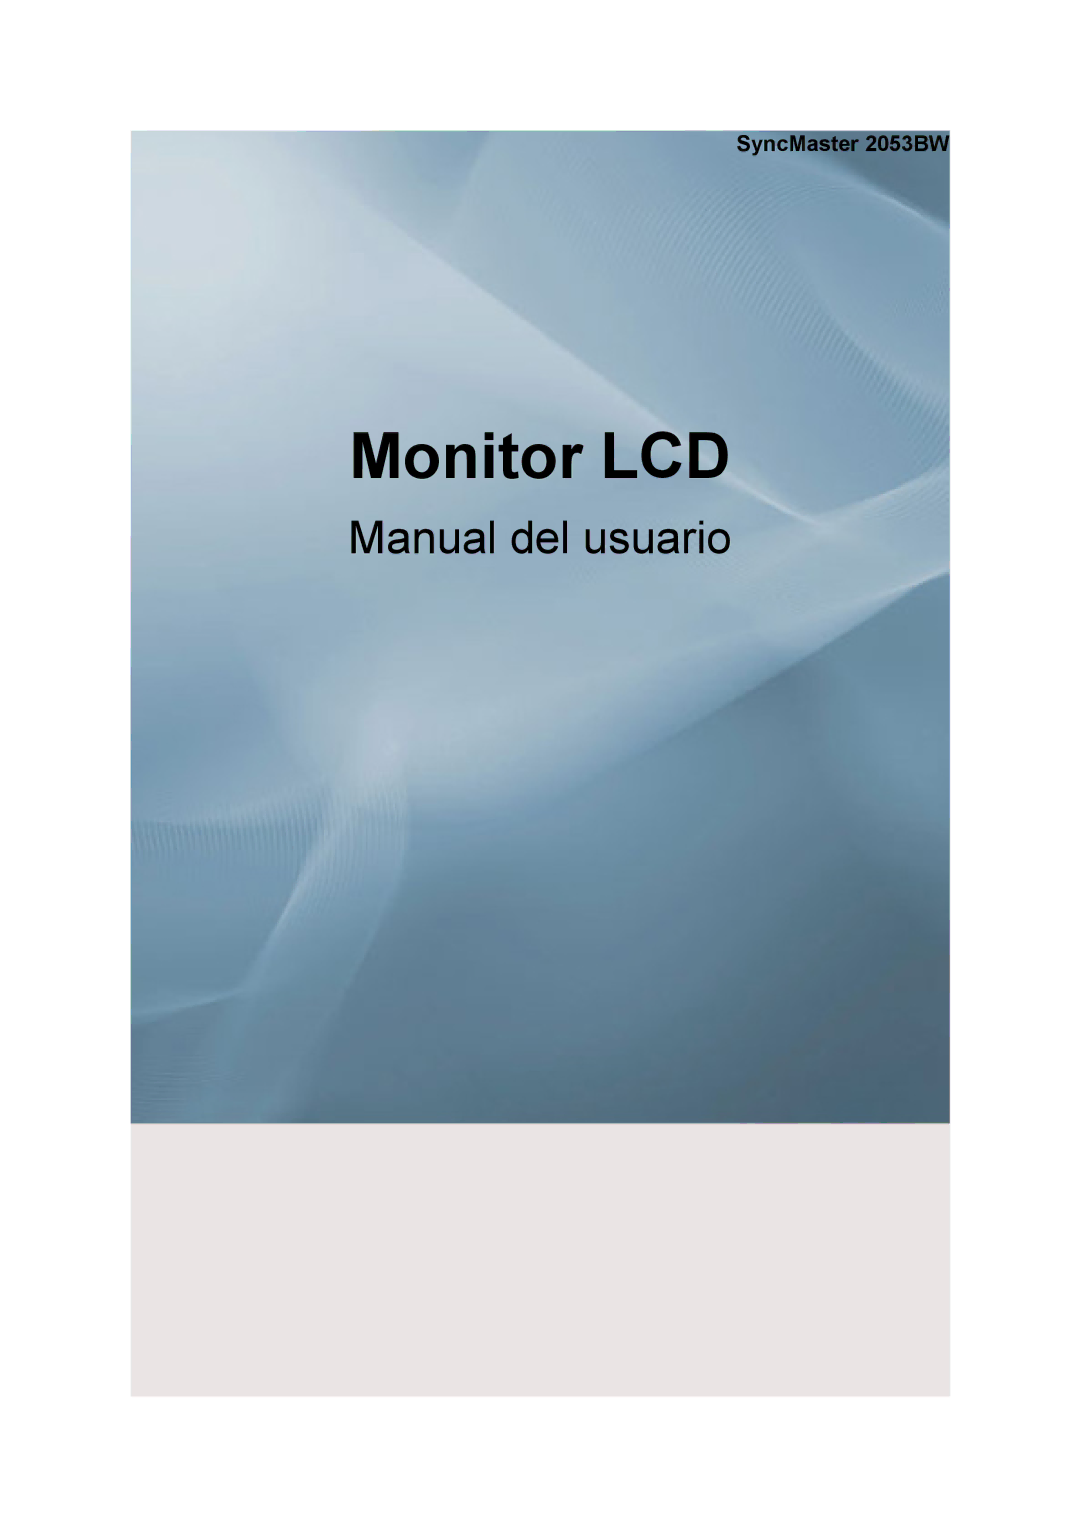 Samsung LS22AQWJFV/EDC, LS20AQWJFV/EDC manual LCD-Monitor, SyncMaster 2053BW 